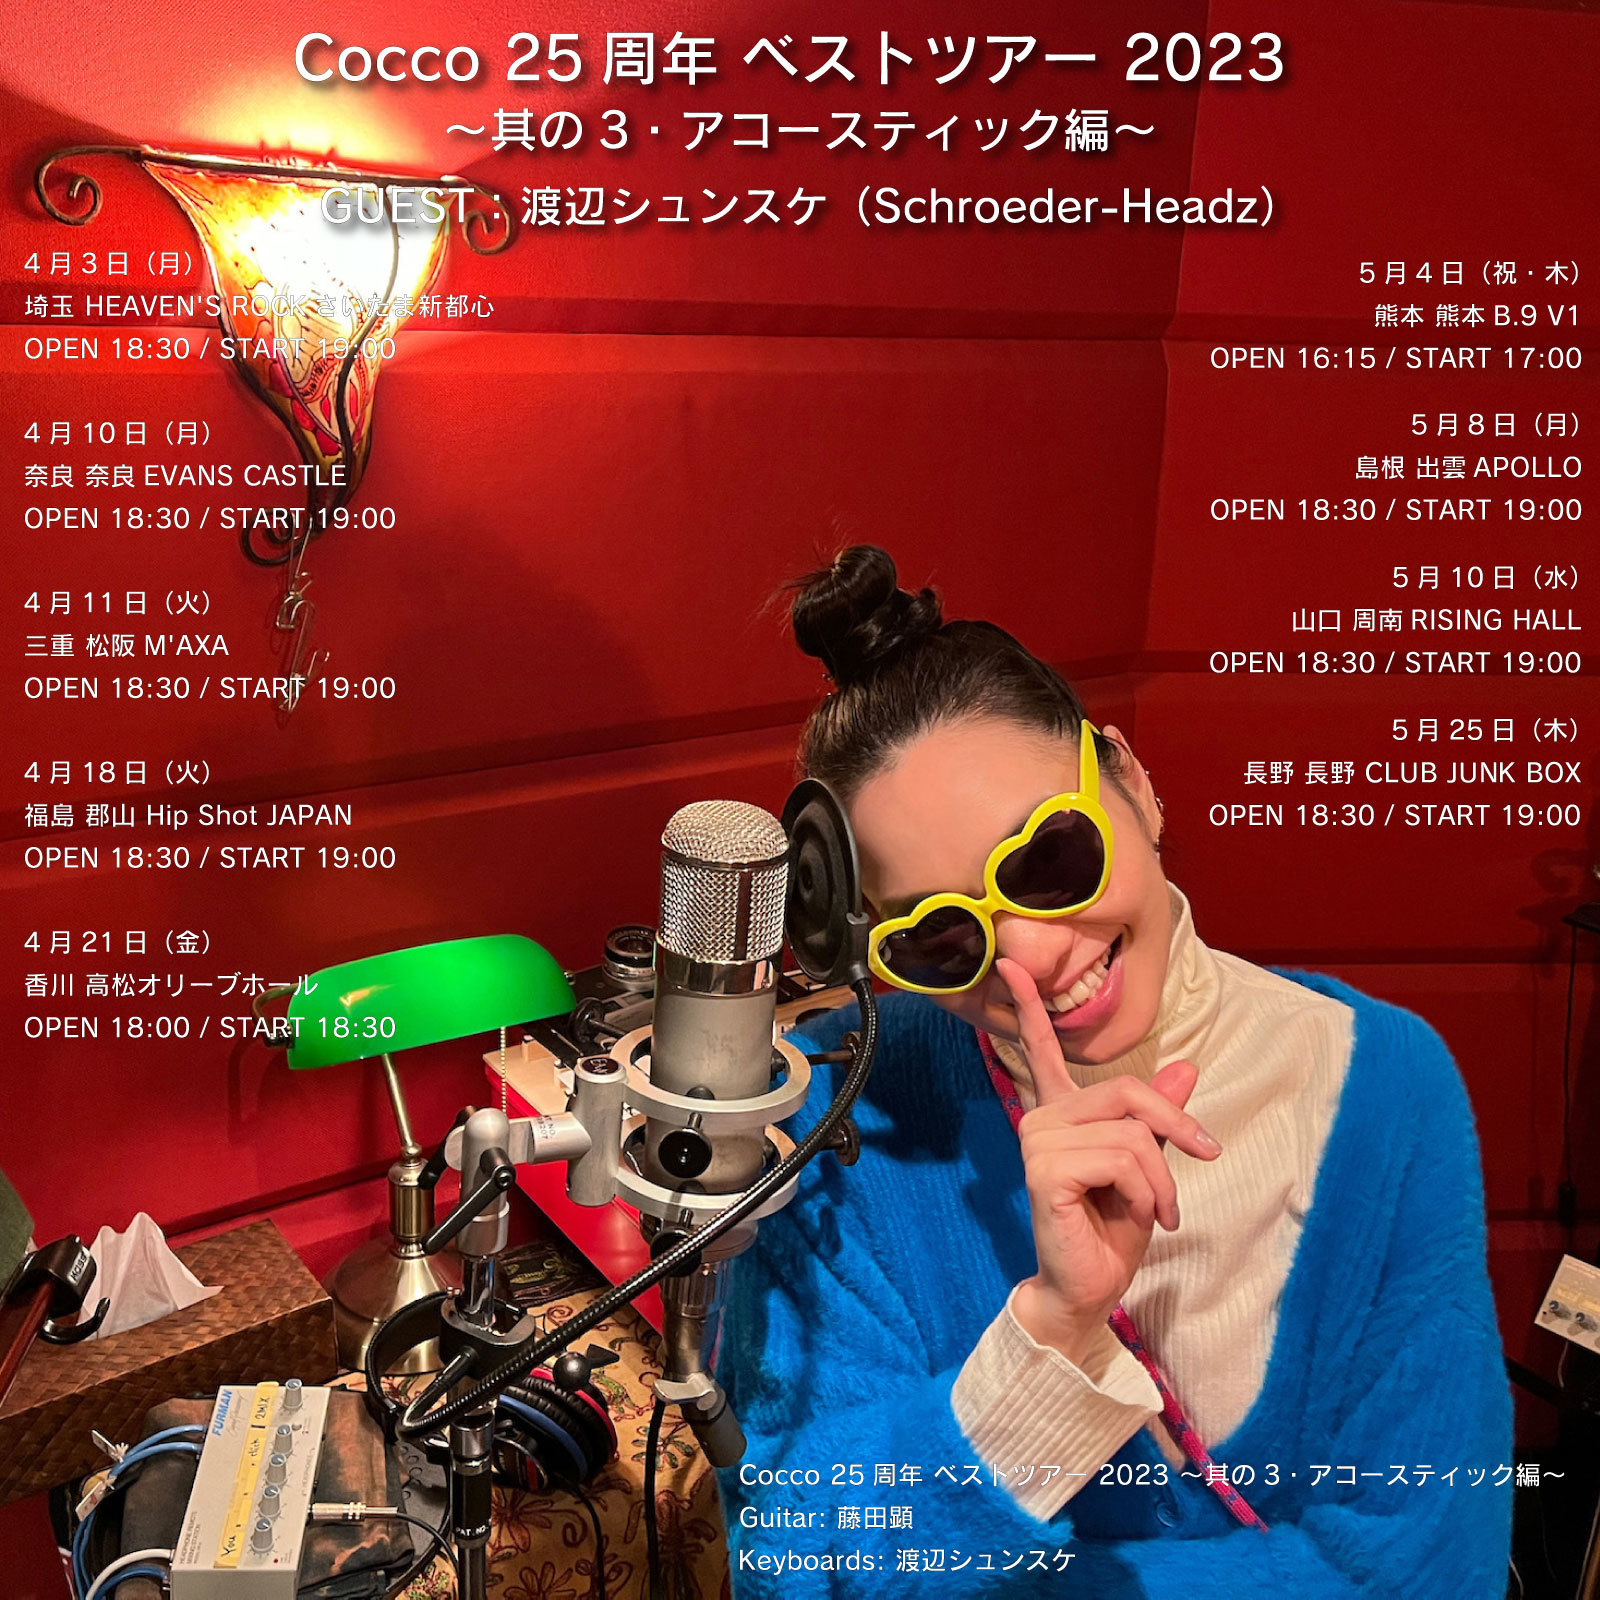 ＜Cocco 25周年ベストツアー 〜其の3〜＞ツアー告知画像